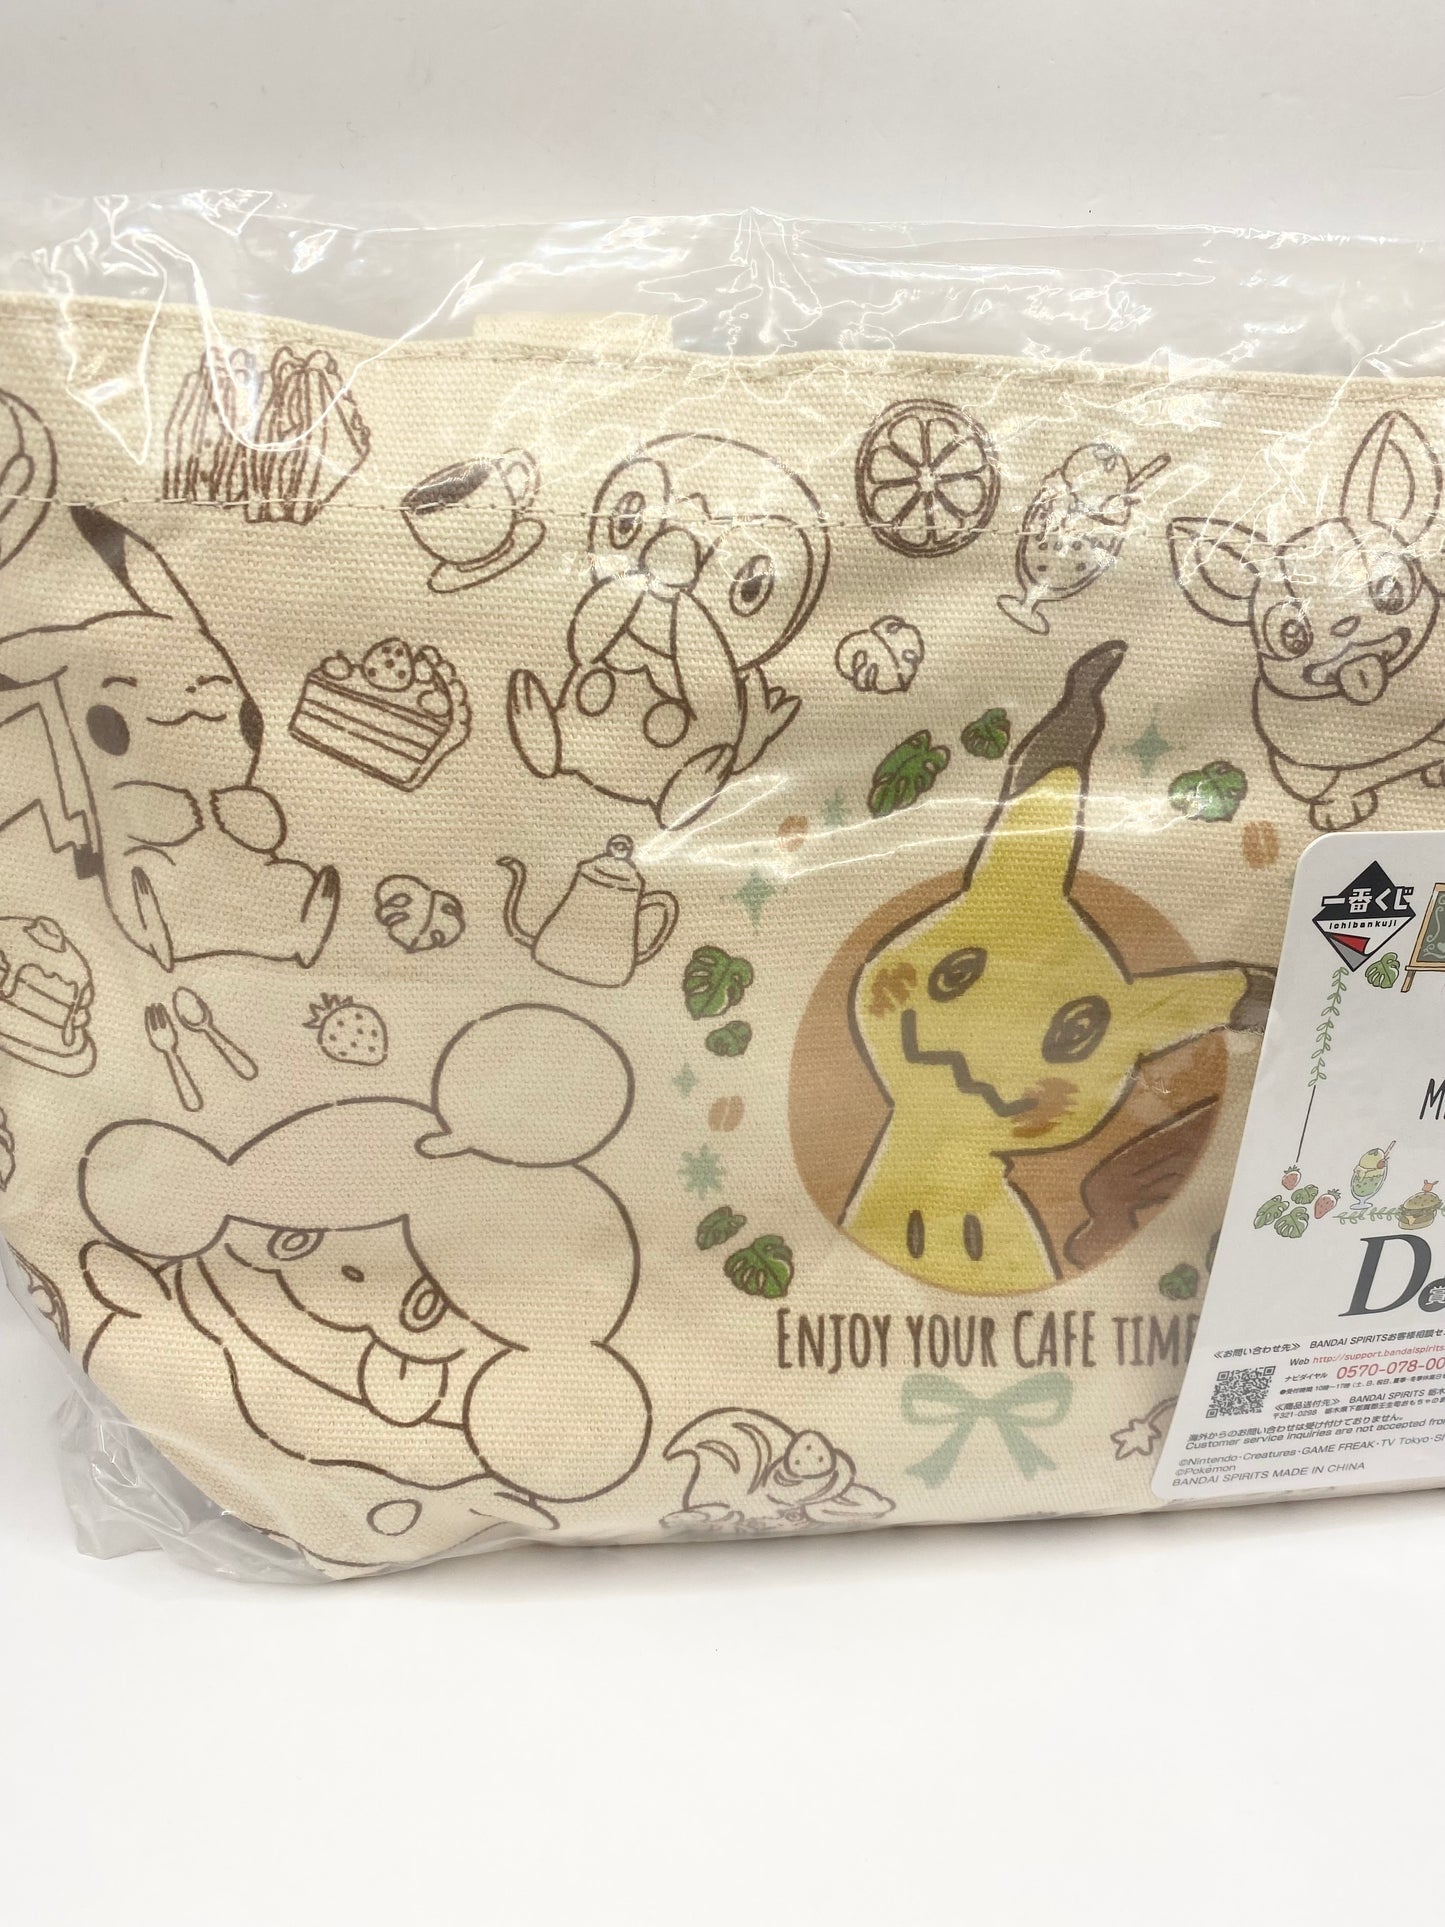 Pokémon Mimikyu's Mimigma Cafe Time Tote Bag Kawaii Anime Manga W12" x H8"